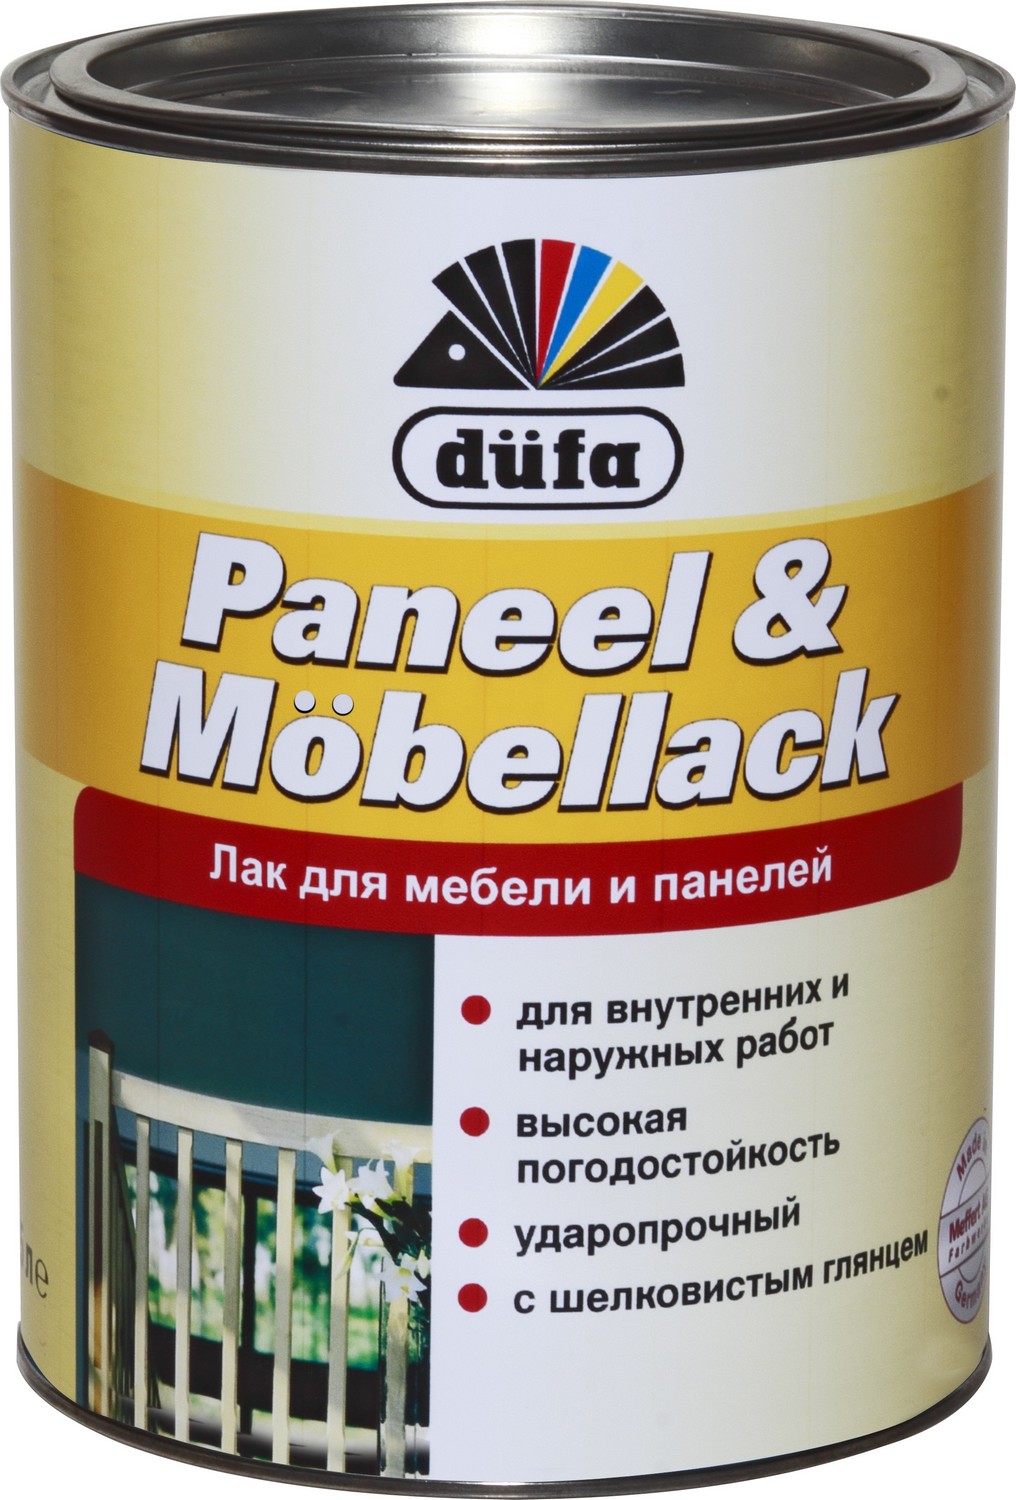 Лак Dufa paneel & Mobellack (0.75 л) алкидный